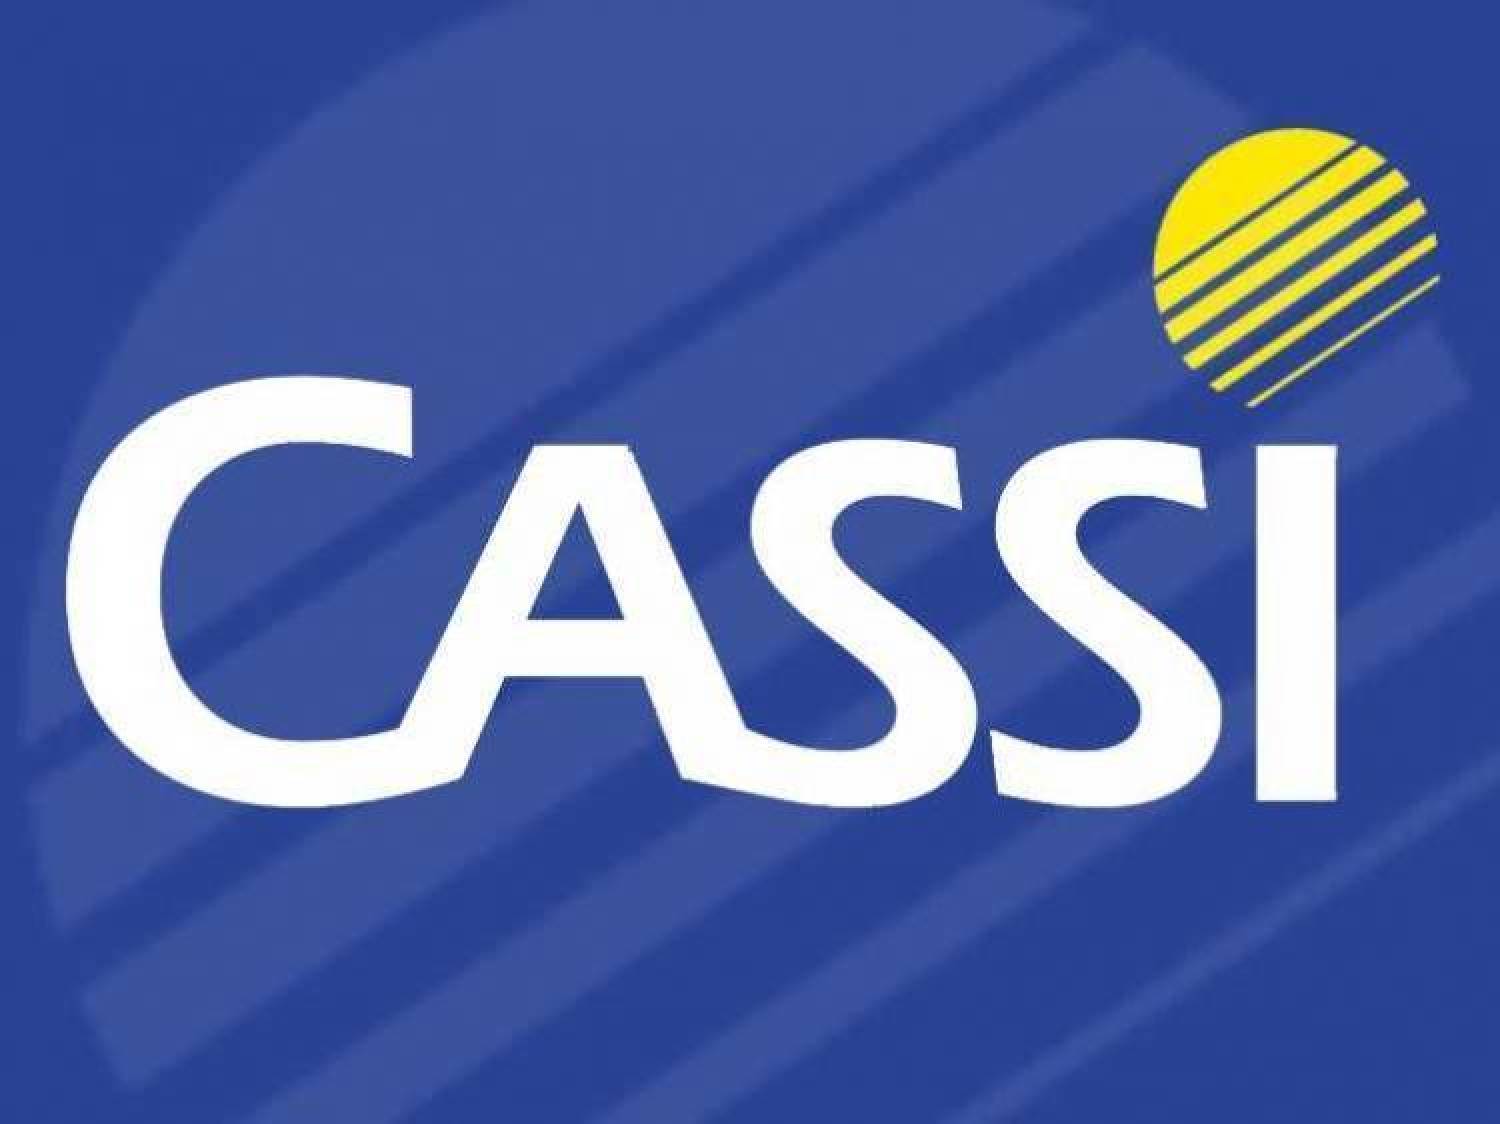 Cassi: Entidades rejeitam proposta do BB e negociações continuam